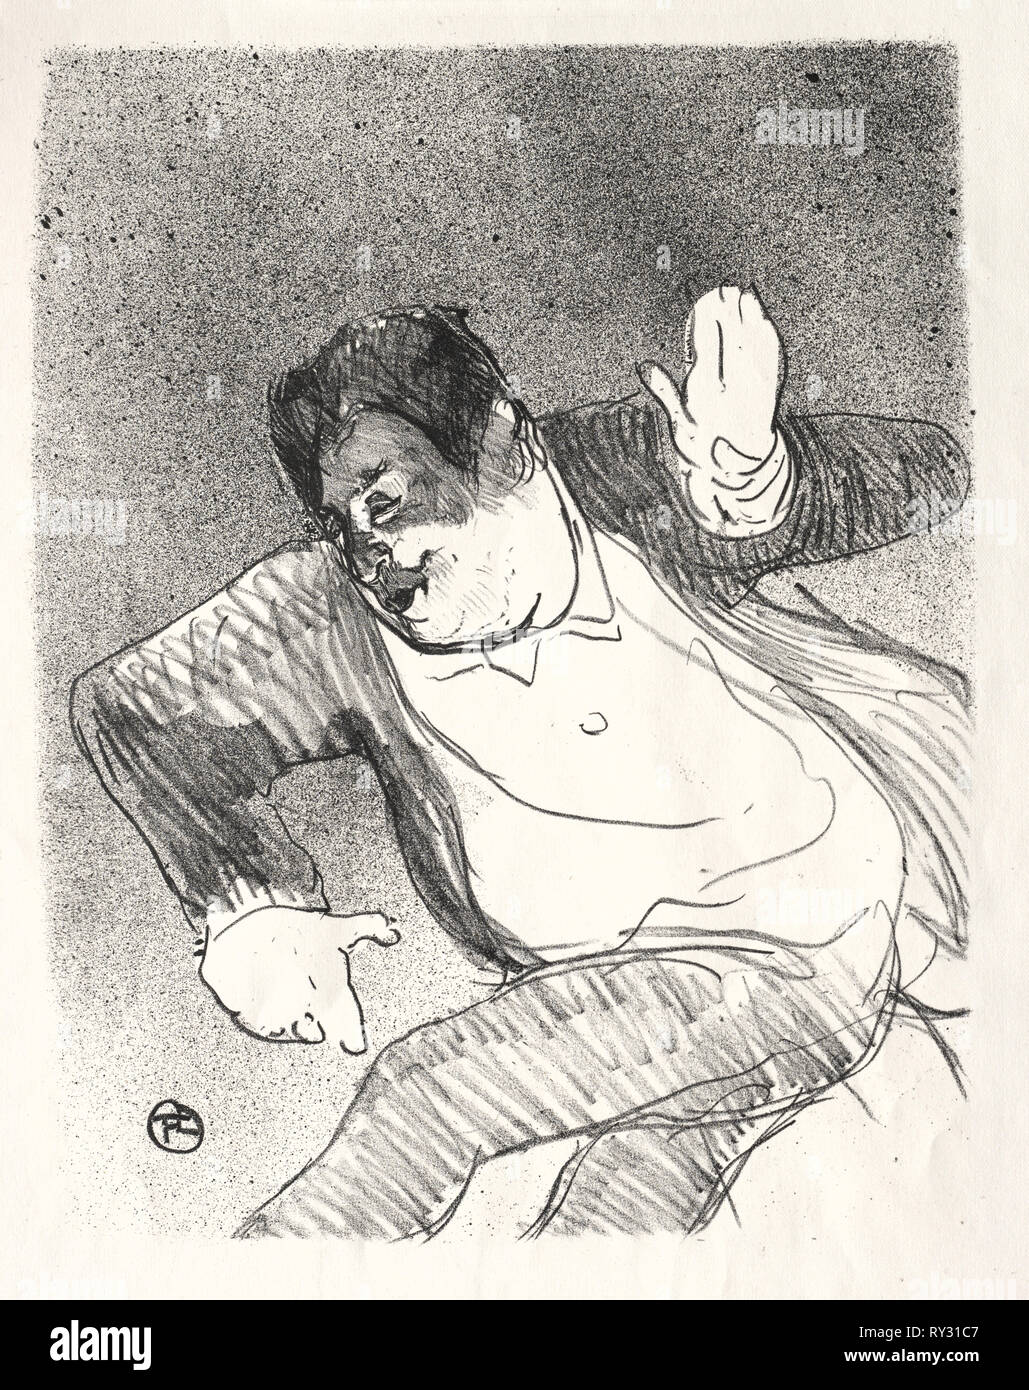 Caudieux, 1893. Henri de Toulouse-Lautrec (French, 1864-1901). Lithograph Stock Photo